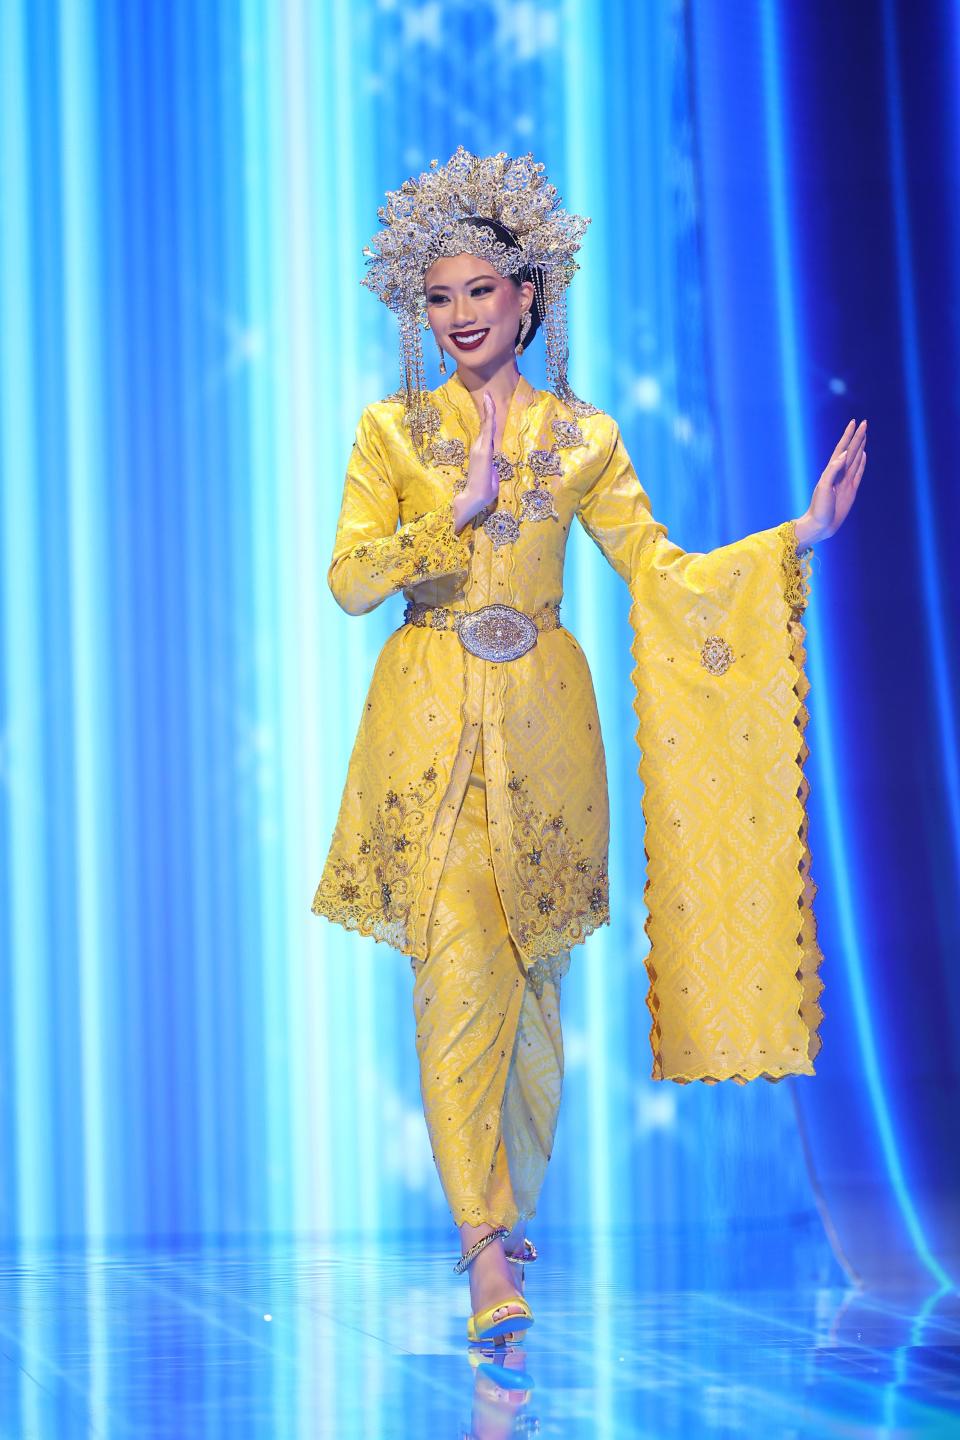 Un elegante traje que lució Miss Malasia, Serena Lee. (Héctor Vivas/Getty Images)